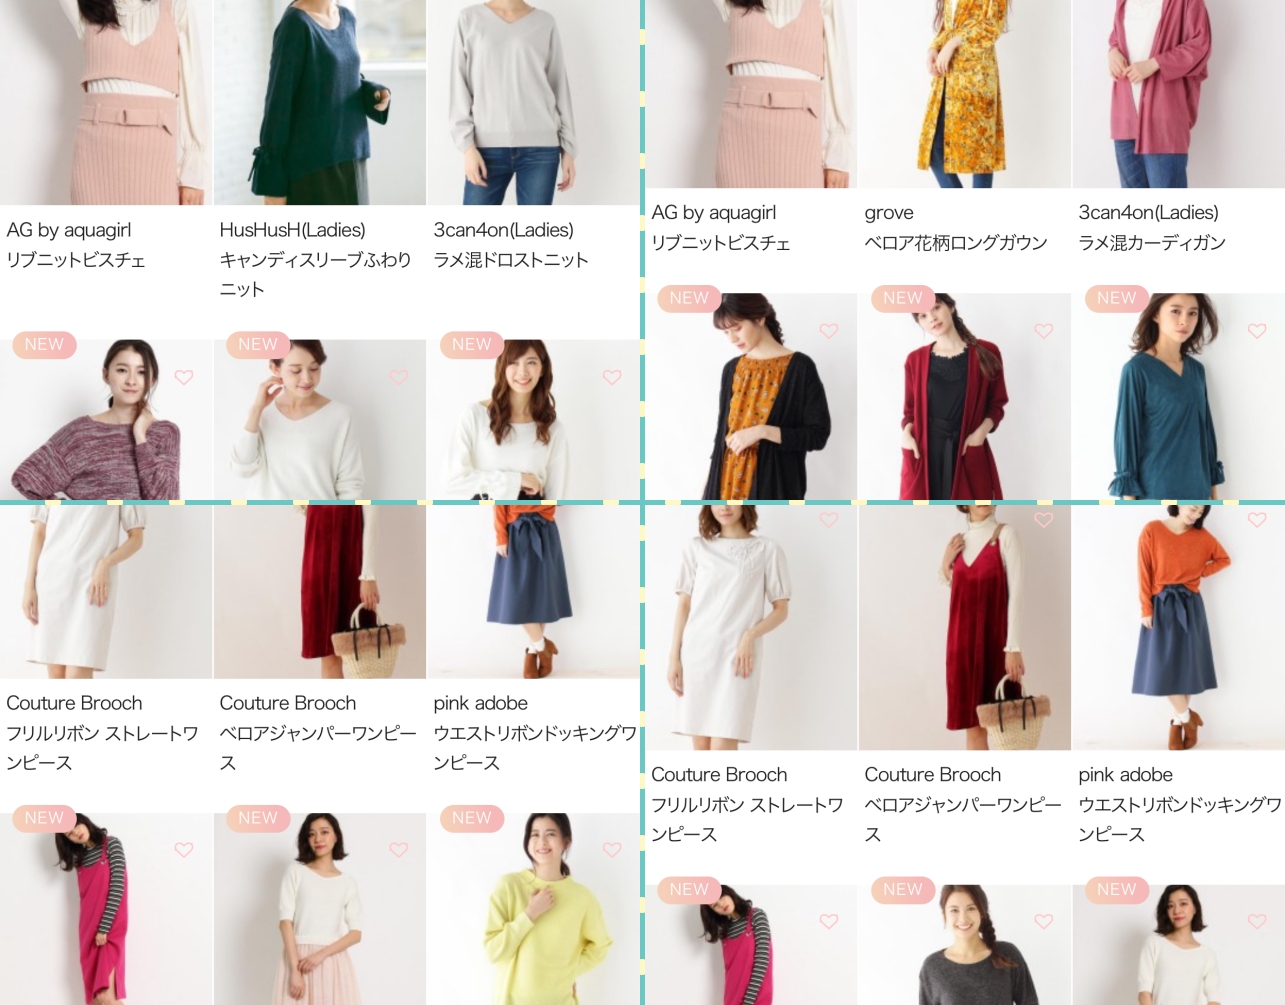 SUSTINAでレンタルできる洋服のイメージ画像。月額4900円で10アイテムをレンタルできます。